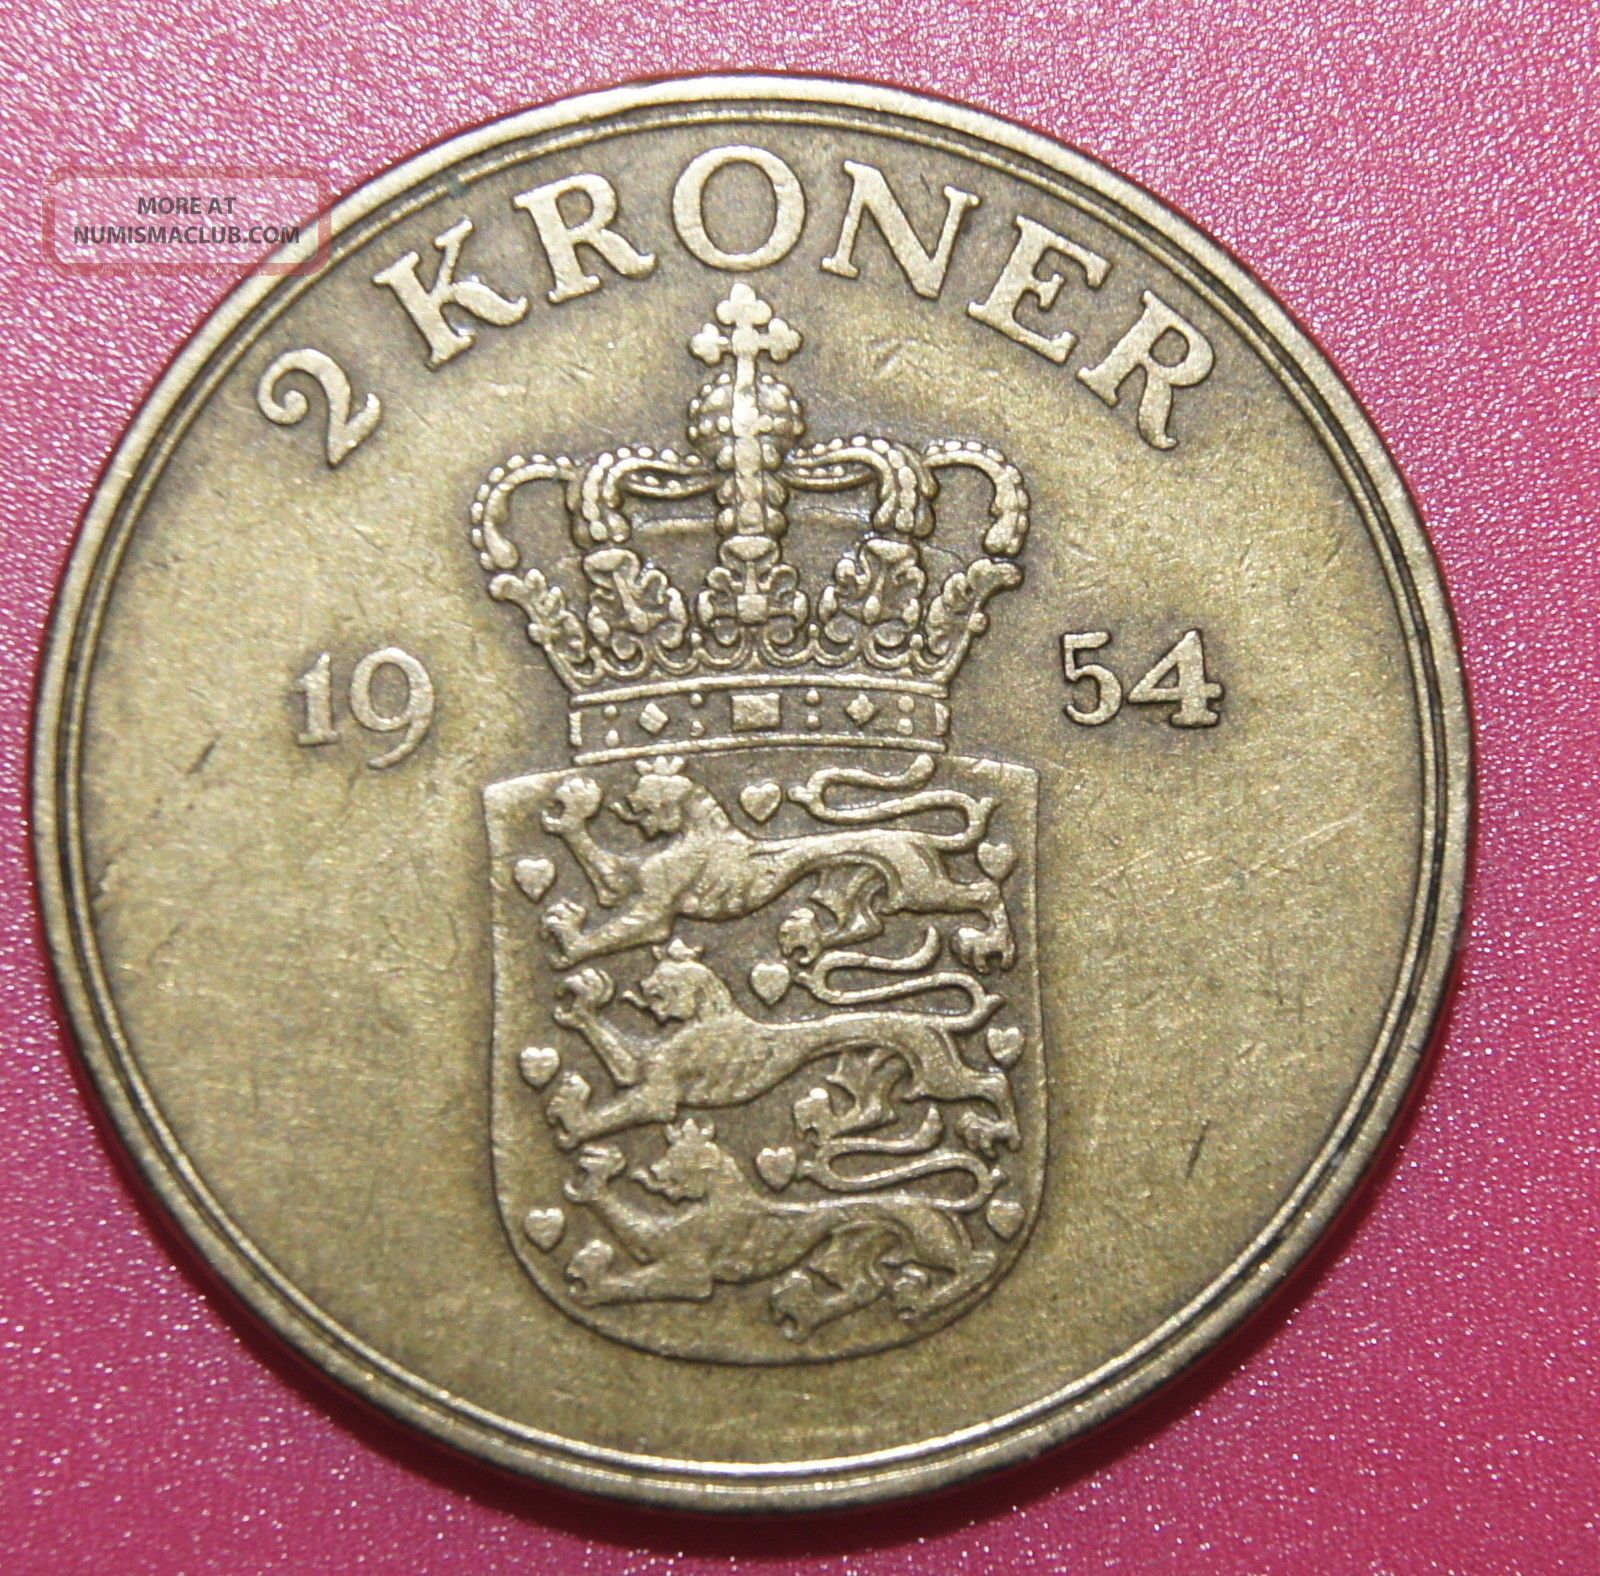 2 kroner denmark coin